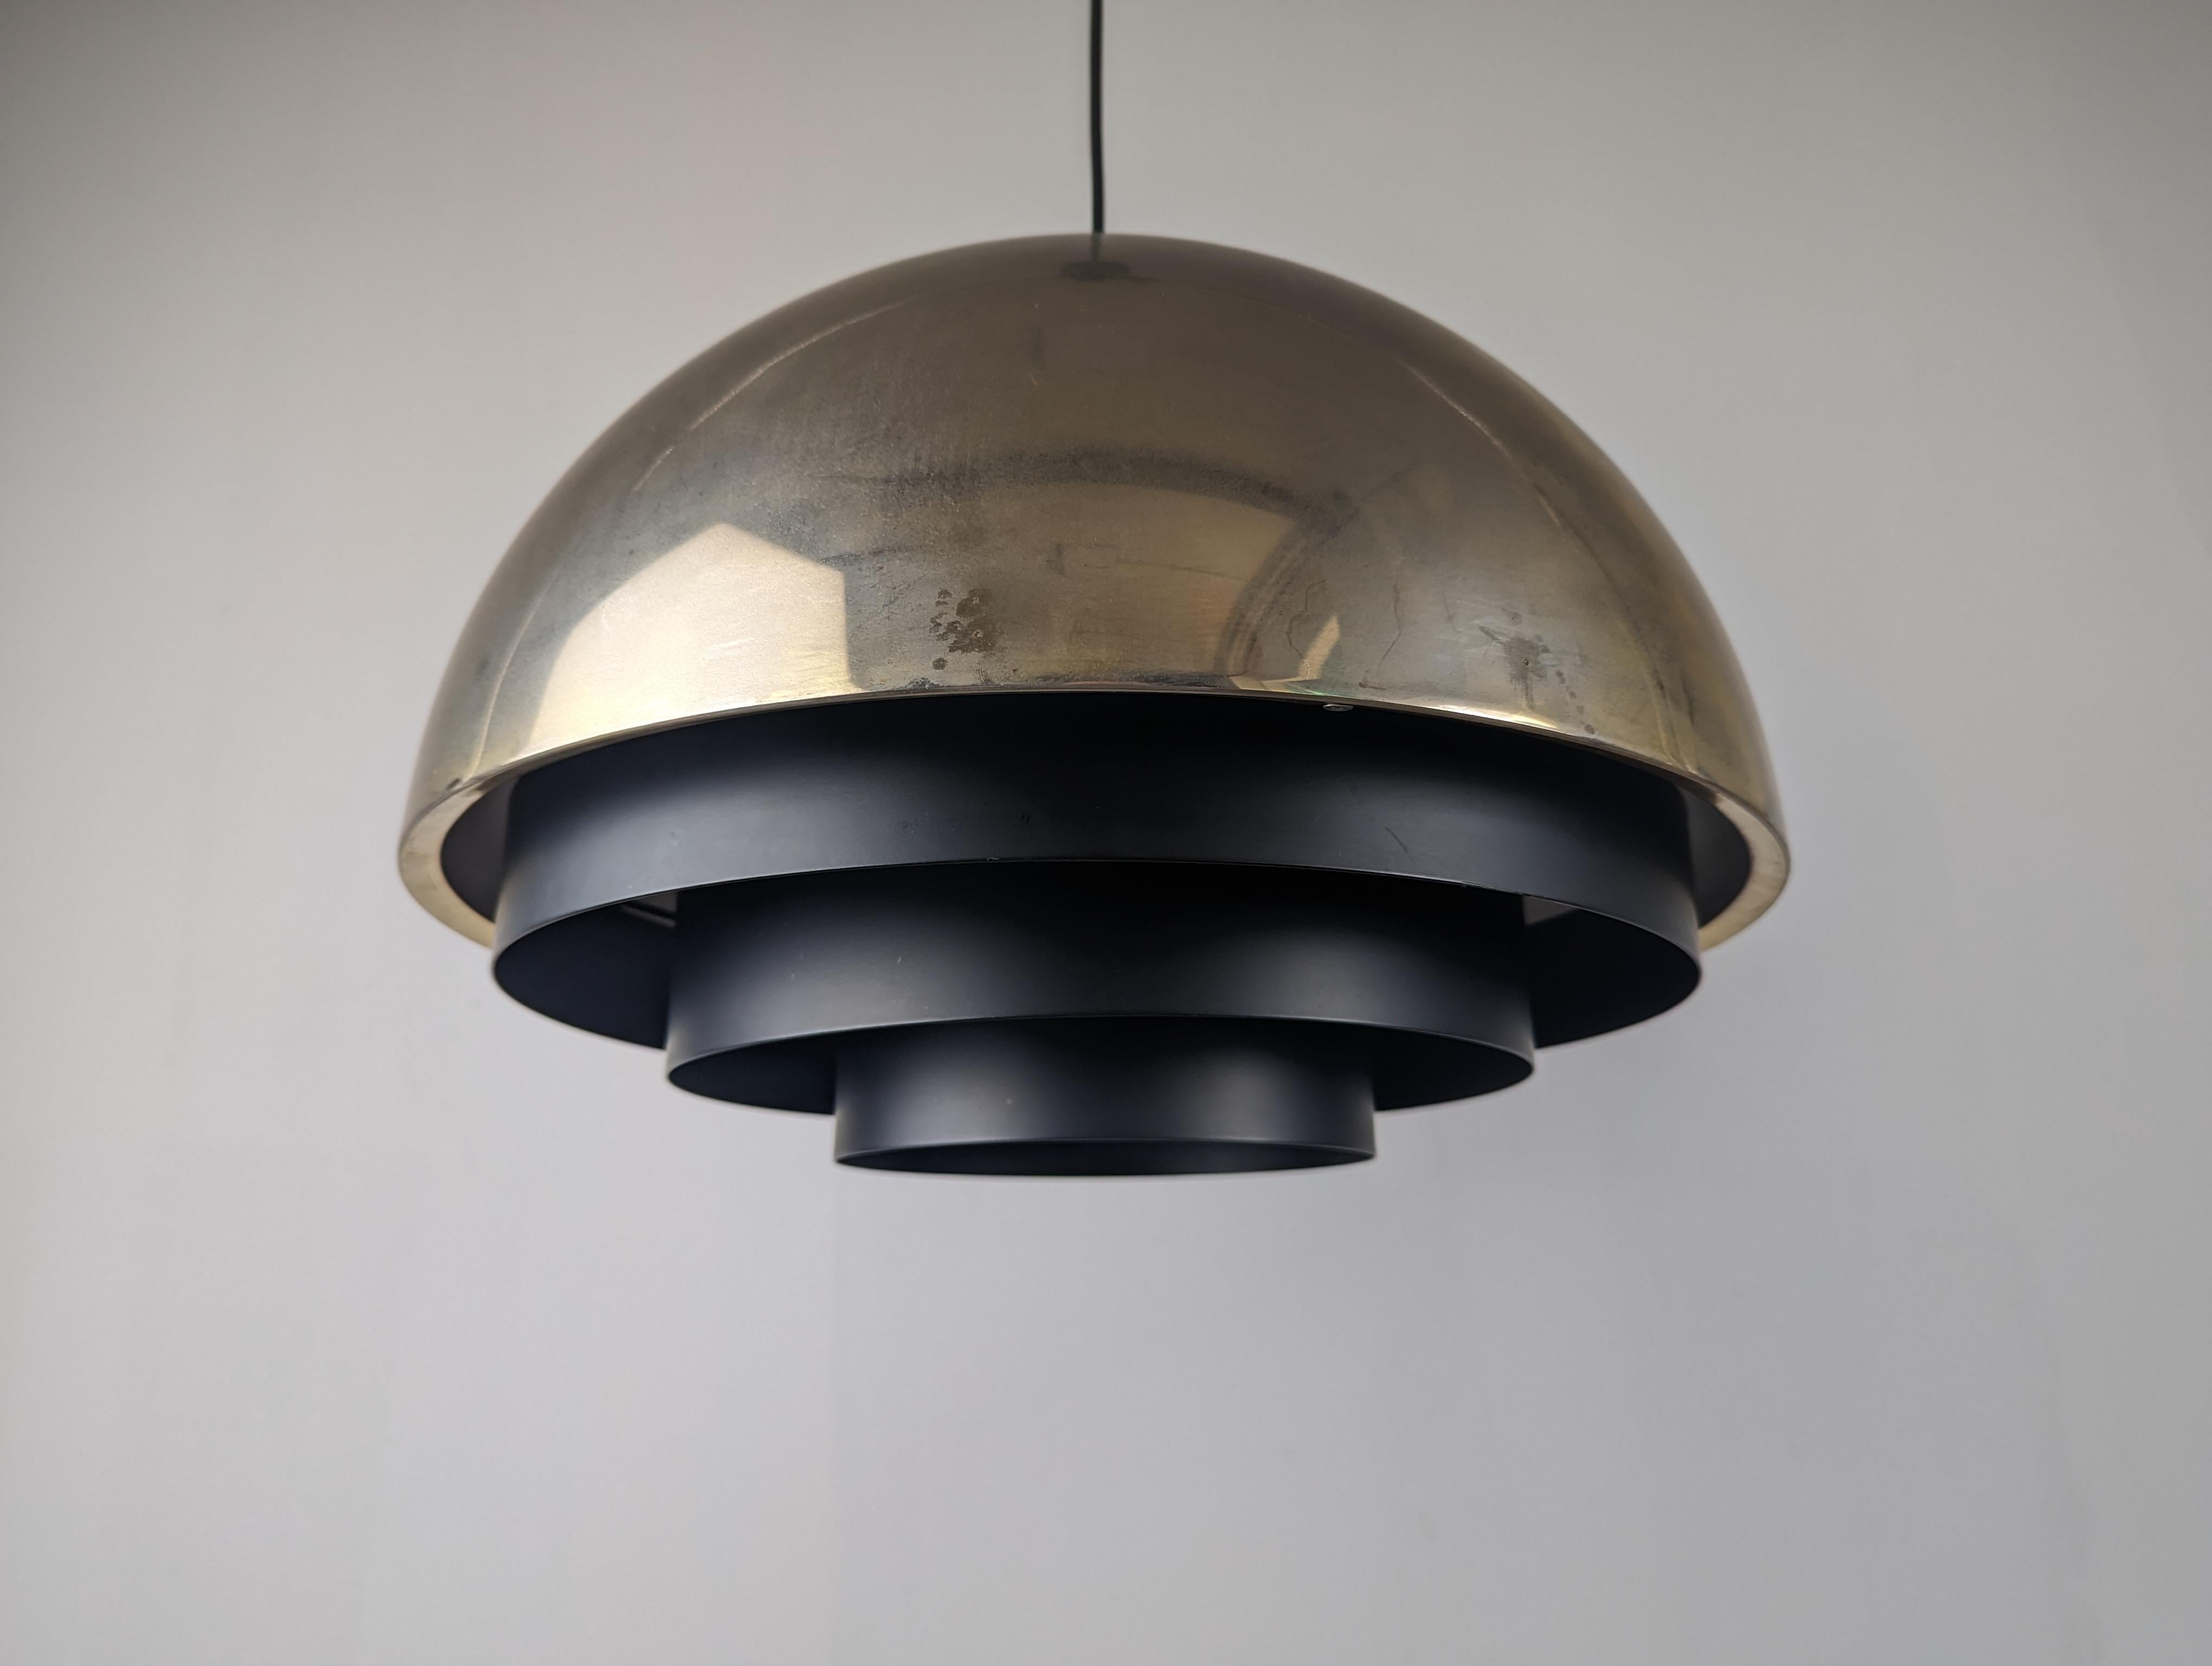 Fantastische Lampe in der größten Version der Milieu-Serie, die der dänische Designer Jo Hammerborg für das renommierte Unternehmen Fog & Morup entworfen hat. Ein exklusives, super-elegantes Design, das ein verchromtes Oberteil mit Schwarz in Form